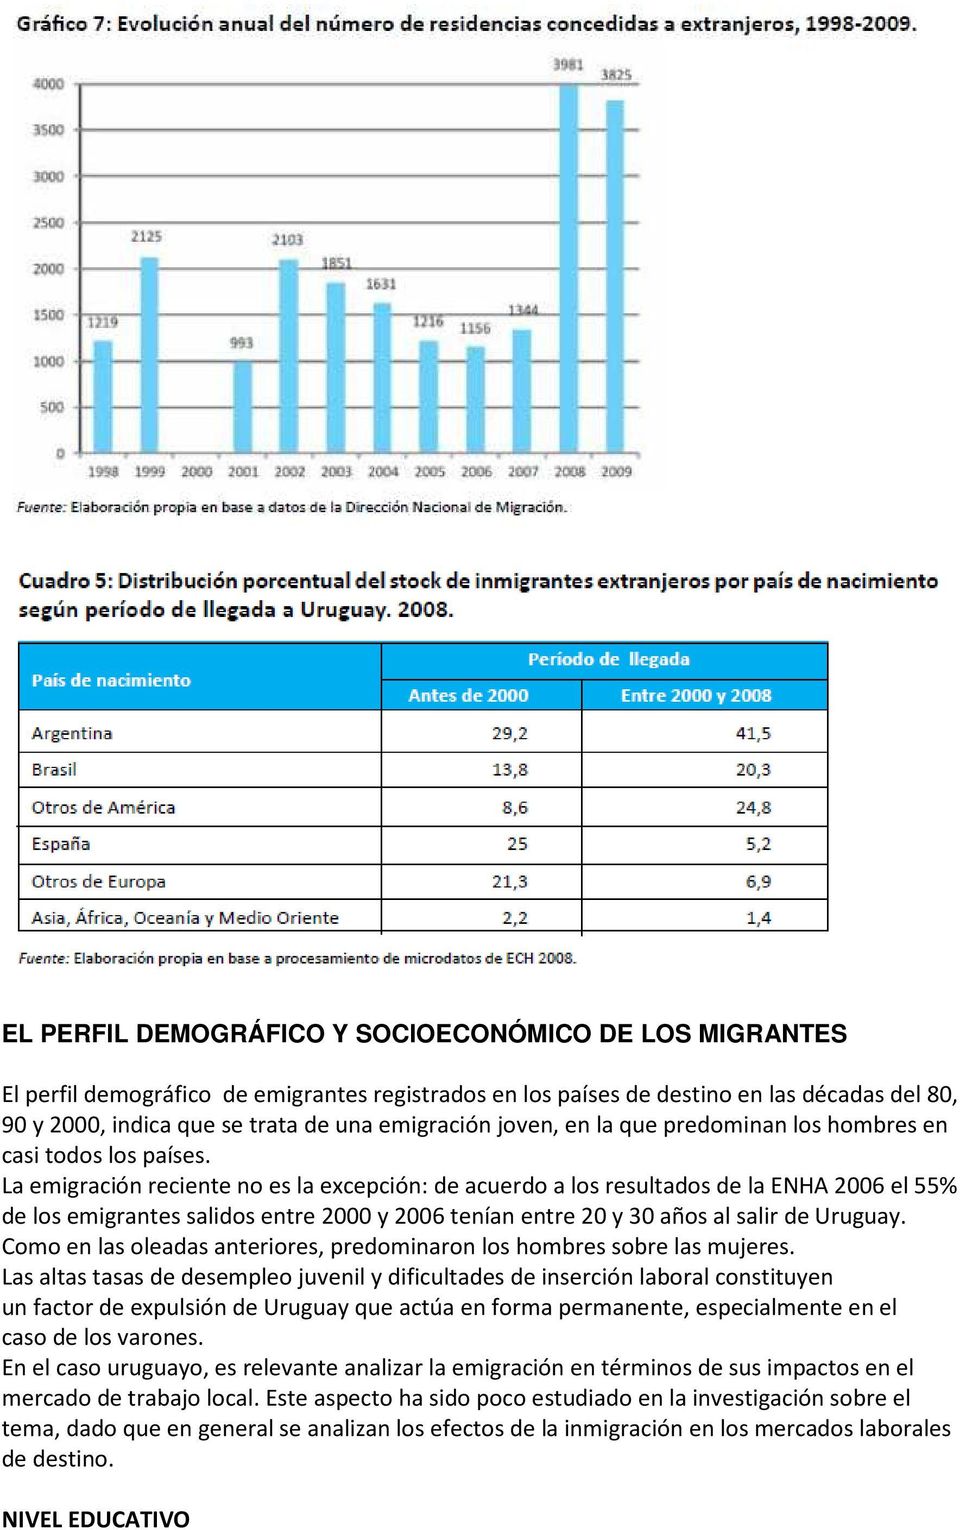 La emigración reciente no es la excepción: de acuerdo a los resultados de la ENHA 2006 el 55% de los emigrantes salidos entre 2000 y 2006 tenían entre 20 y 30 años al salir de Uruguay.